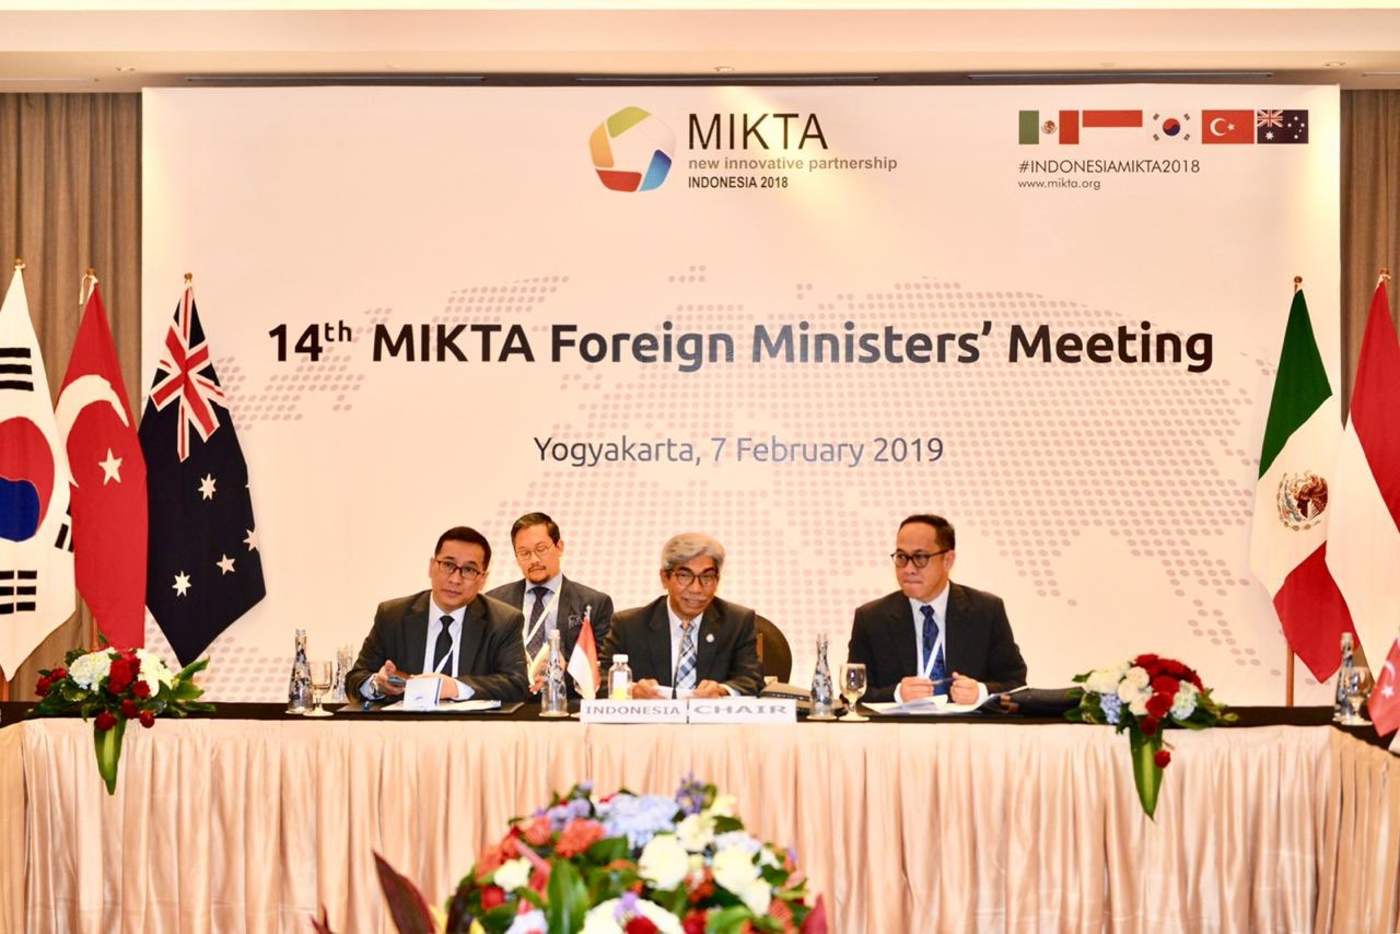 México asumió la coordinación anual de MIKTA, espacio informal de diálogo entre este país y Australia, Indonesia, la República de Corea y Turquía, con el objetivo de fortalecer el desarrollo sostenible y el multilateralismo, informó este viernes la Cancillería. (TWITTER)